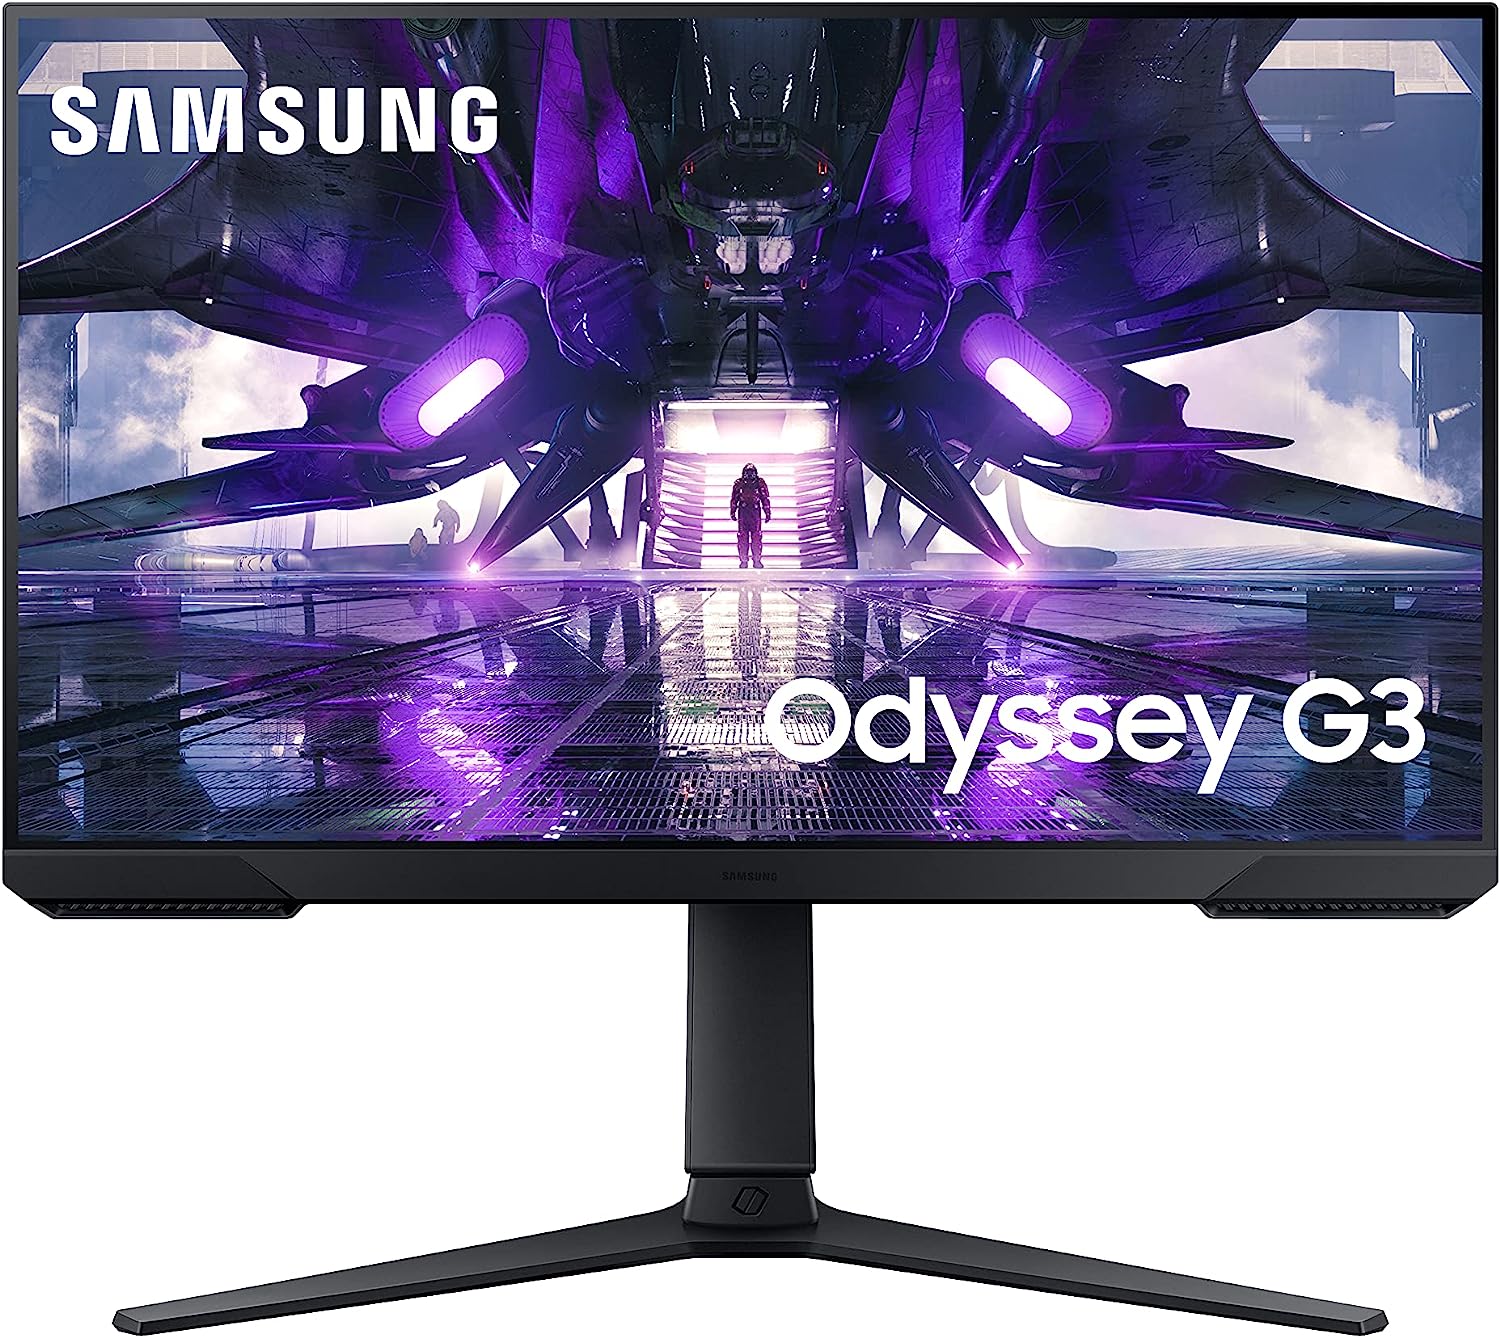 SAMSUNG Odyssey G3 FHD Gaming Monitor, 144hz, HDMI, [...]